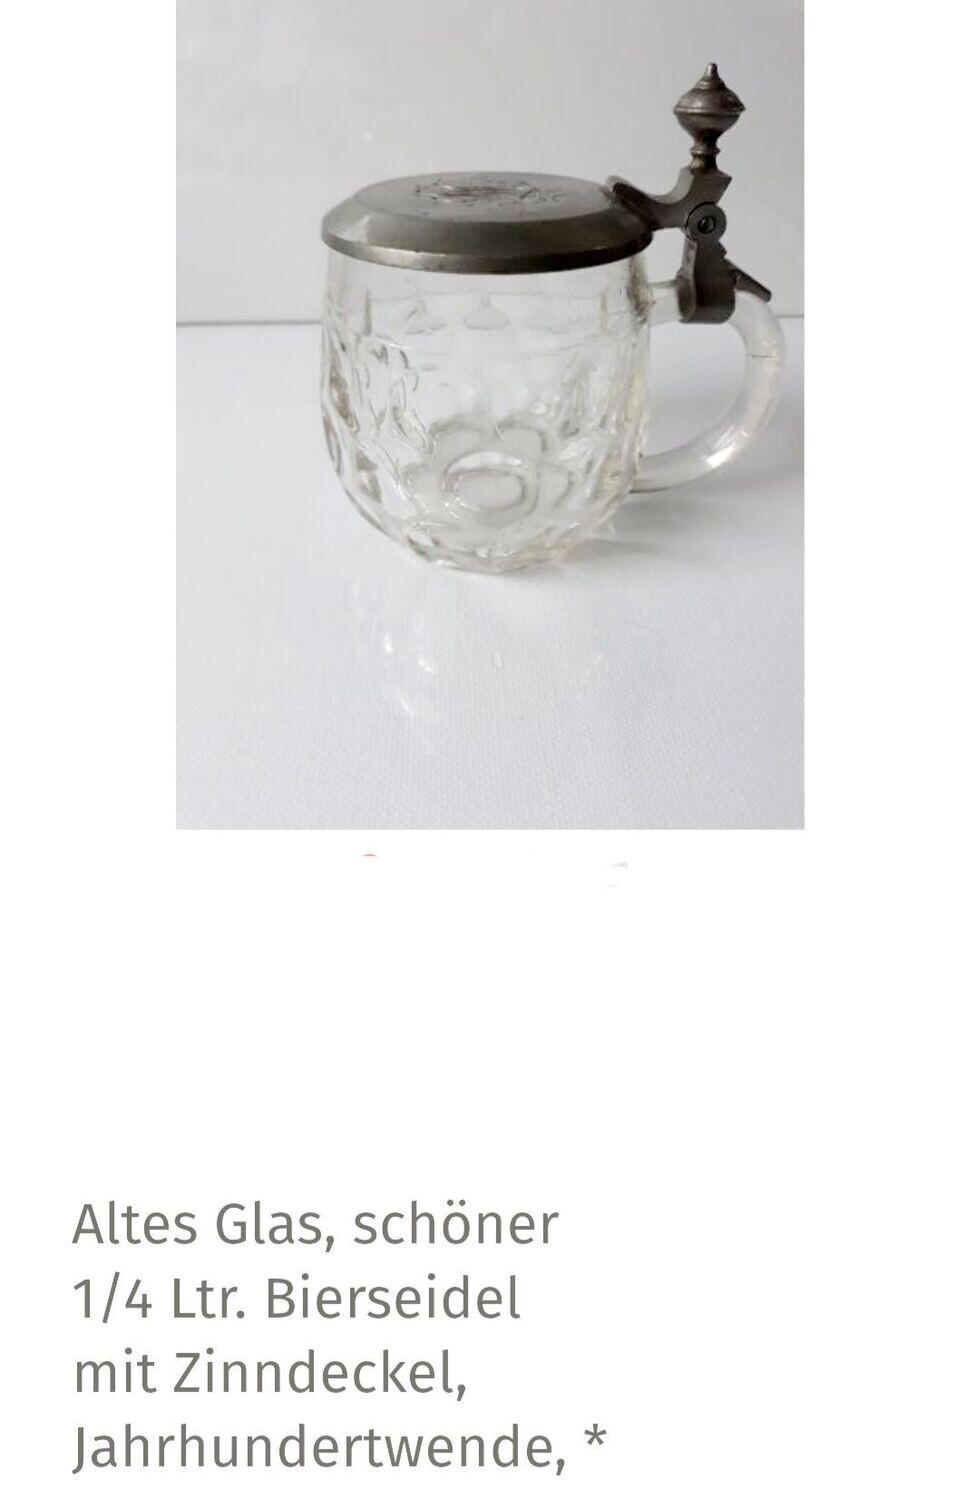 Altes Glas, schöner 1/4 Ltr. Bierseidel mit Zinndeckel, Jahrhundertwende